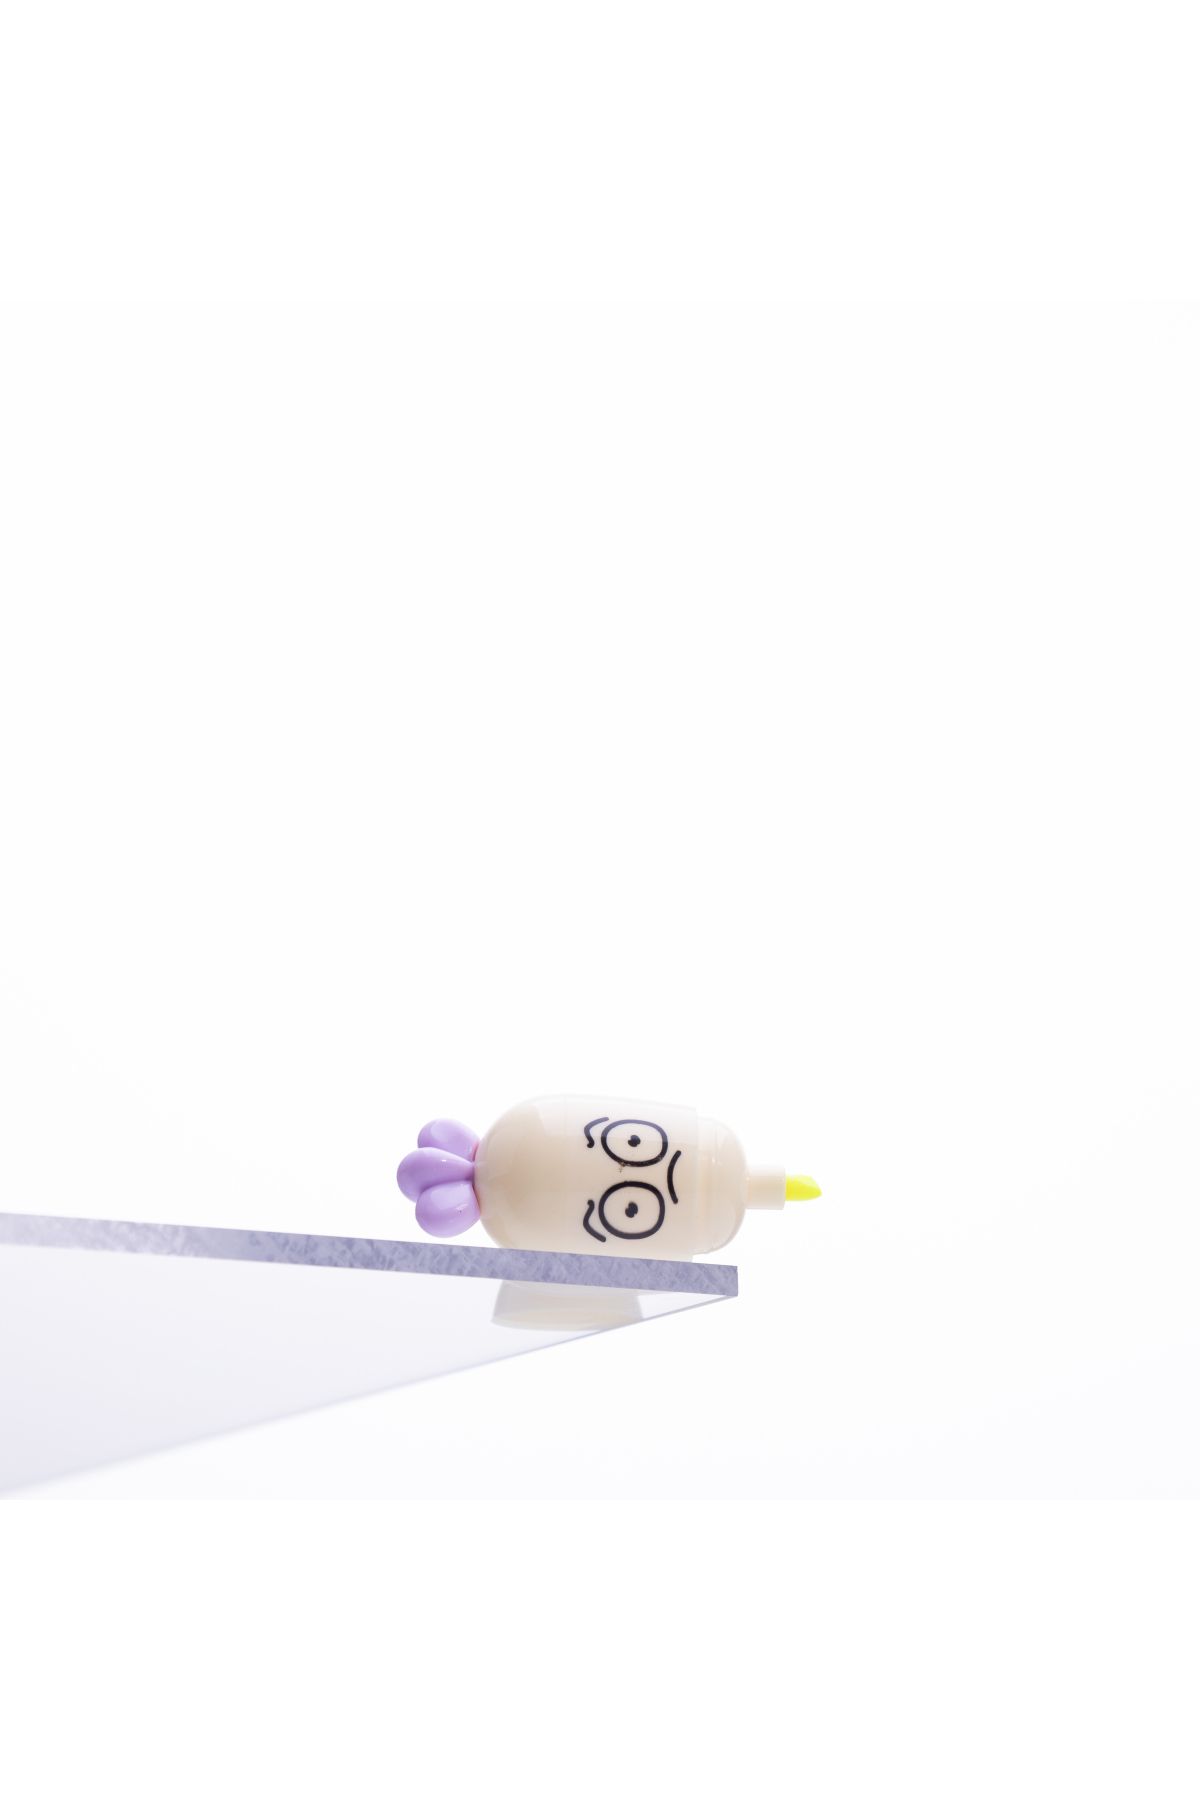 Bimotif Emoji desenli mini havuç, fosforlu kalem, Sarı 1 adet